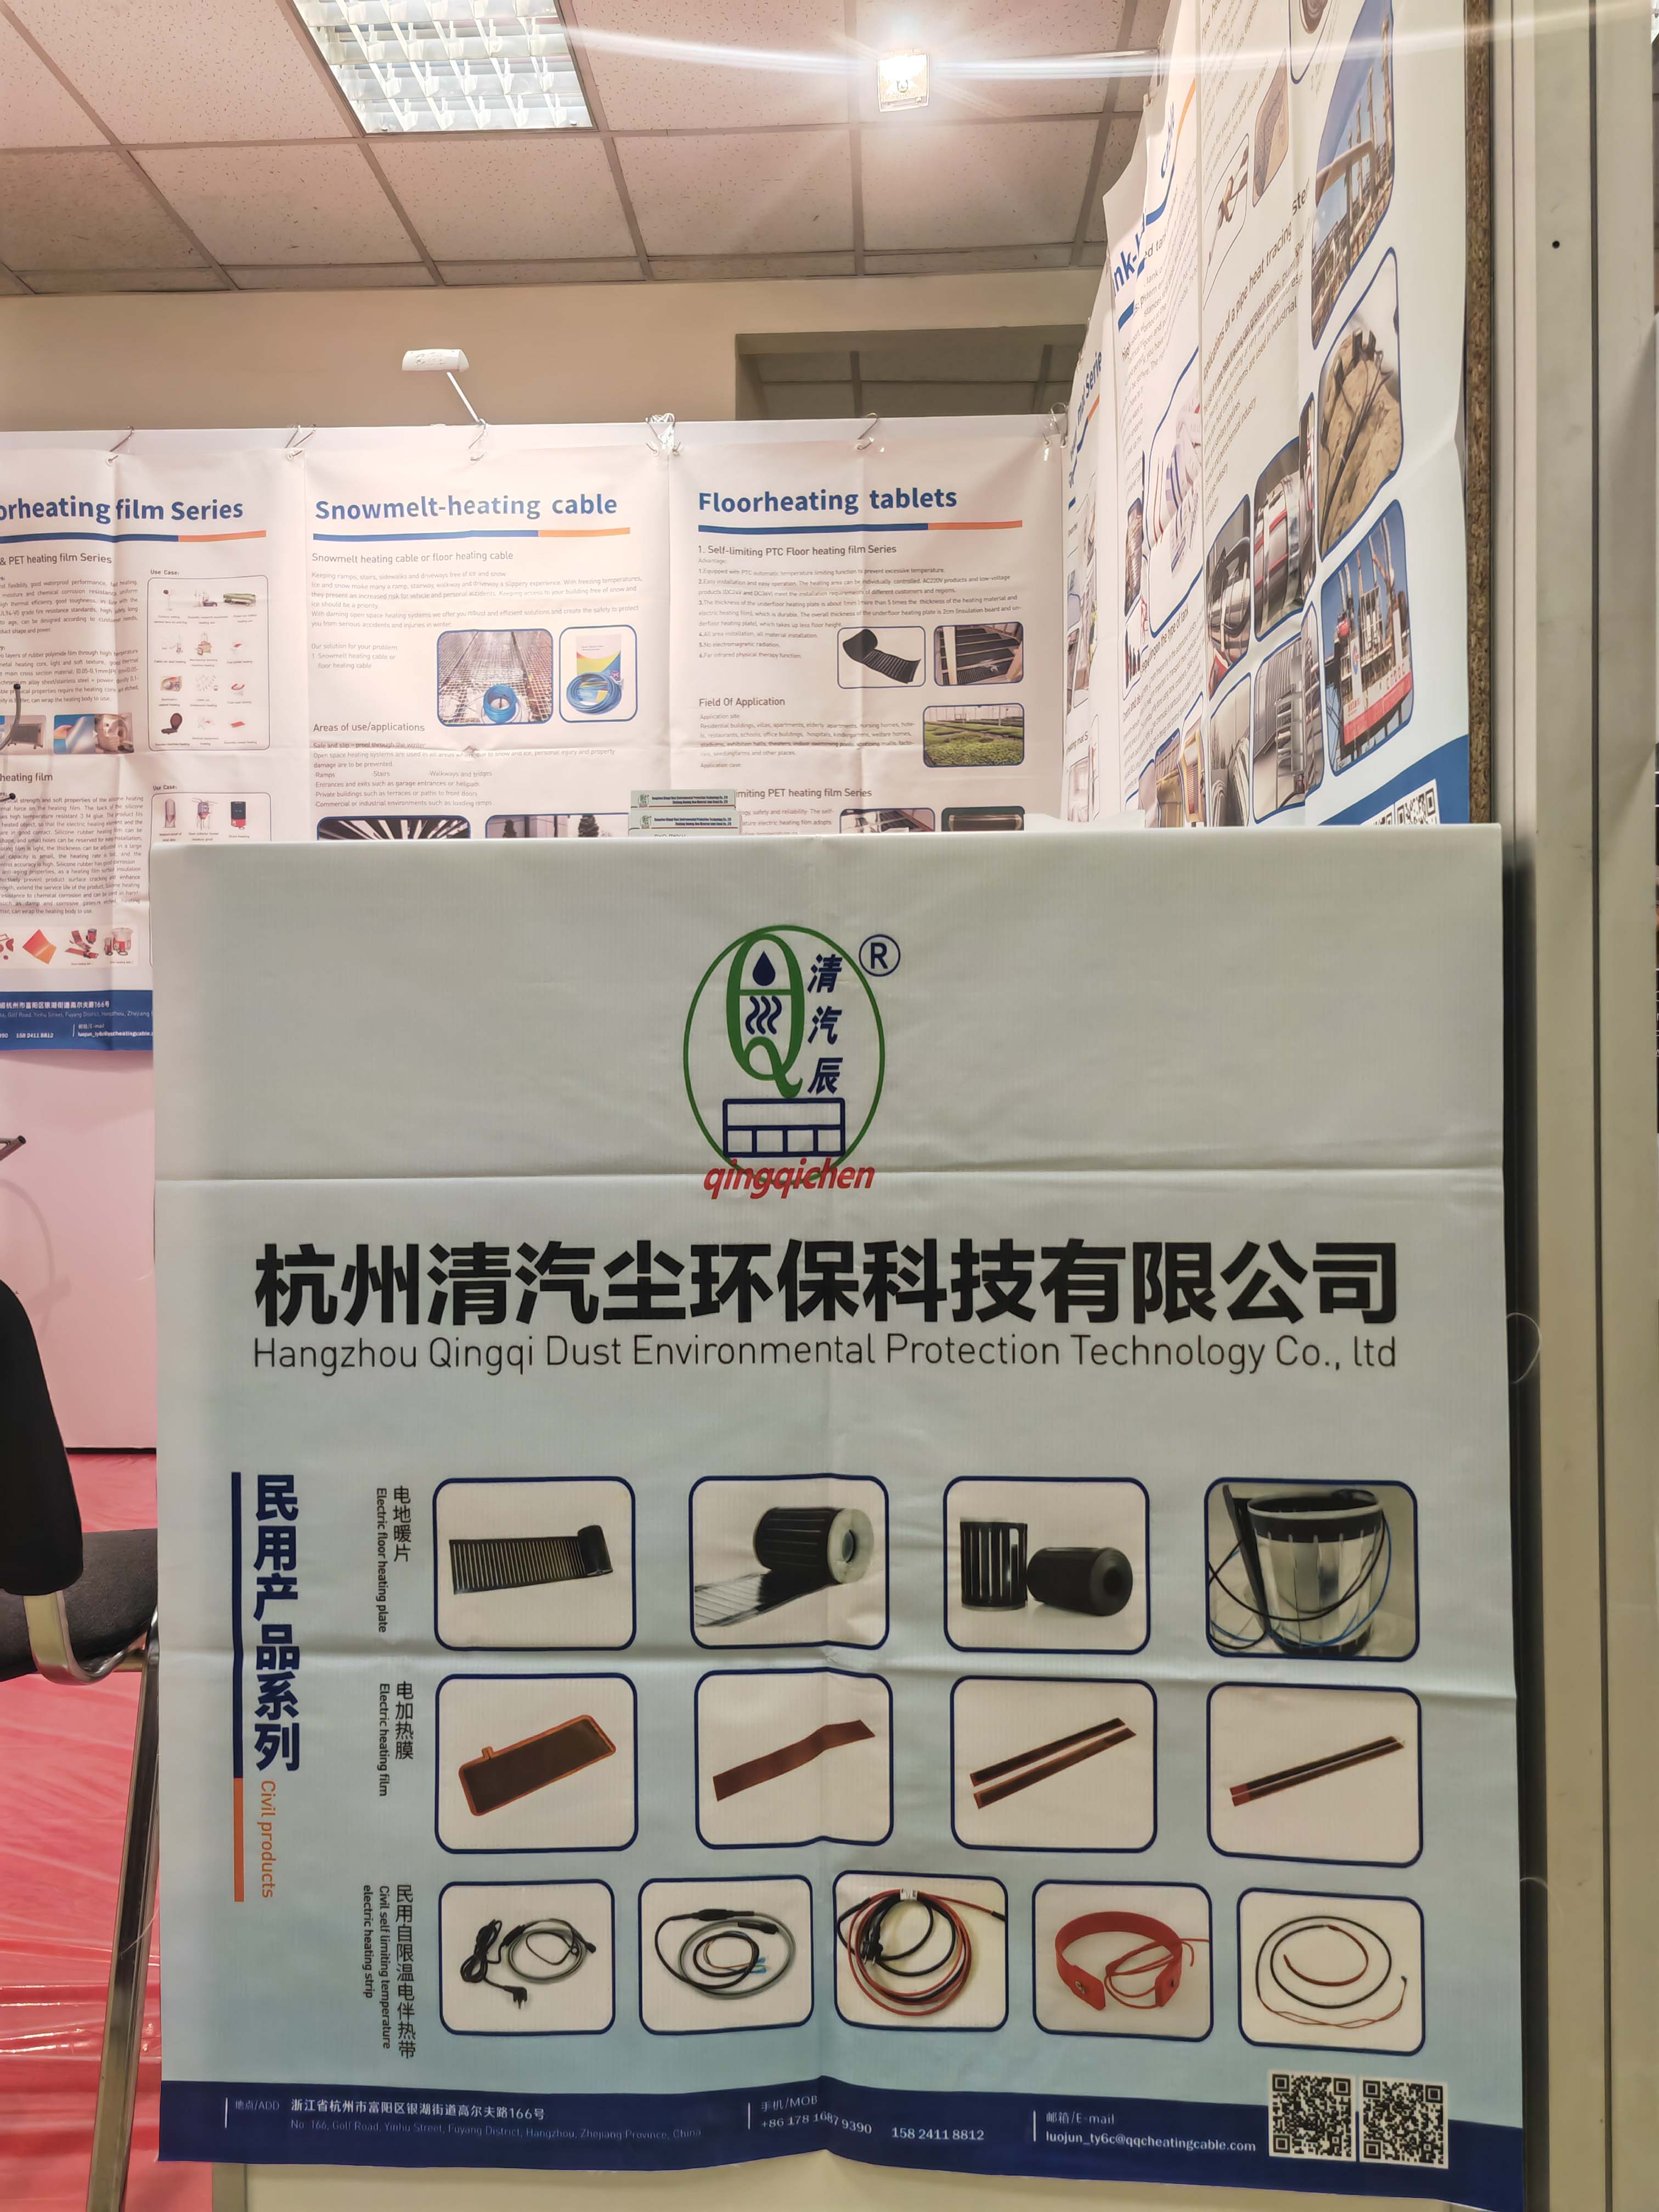  Hangzhou Qingqi Dust Environmental Protection Technology Co., Ltd. di 19-21ê Adarê de pêşangeha CabeX li Moskowê, Rûsya, xêrhatina hevalên rûsî li pêşangehê bikin da ku bi hev re danûstandin û danûstandinan bikin 